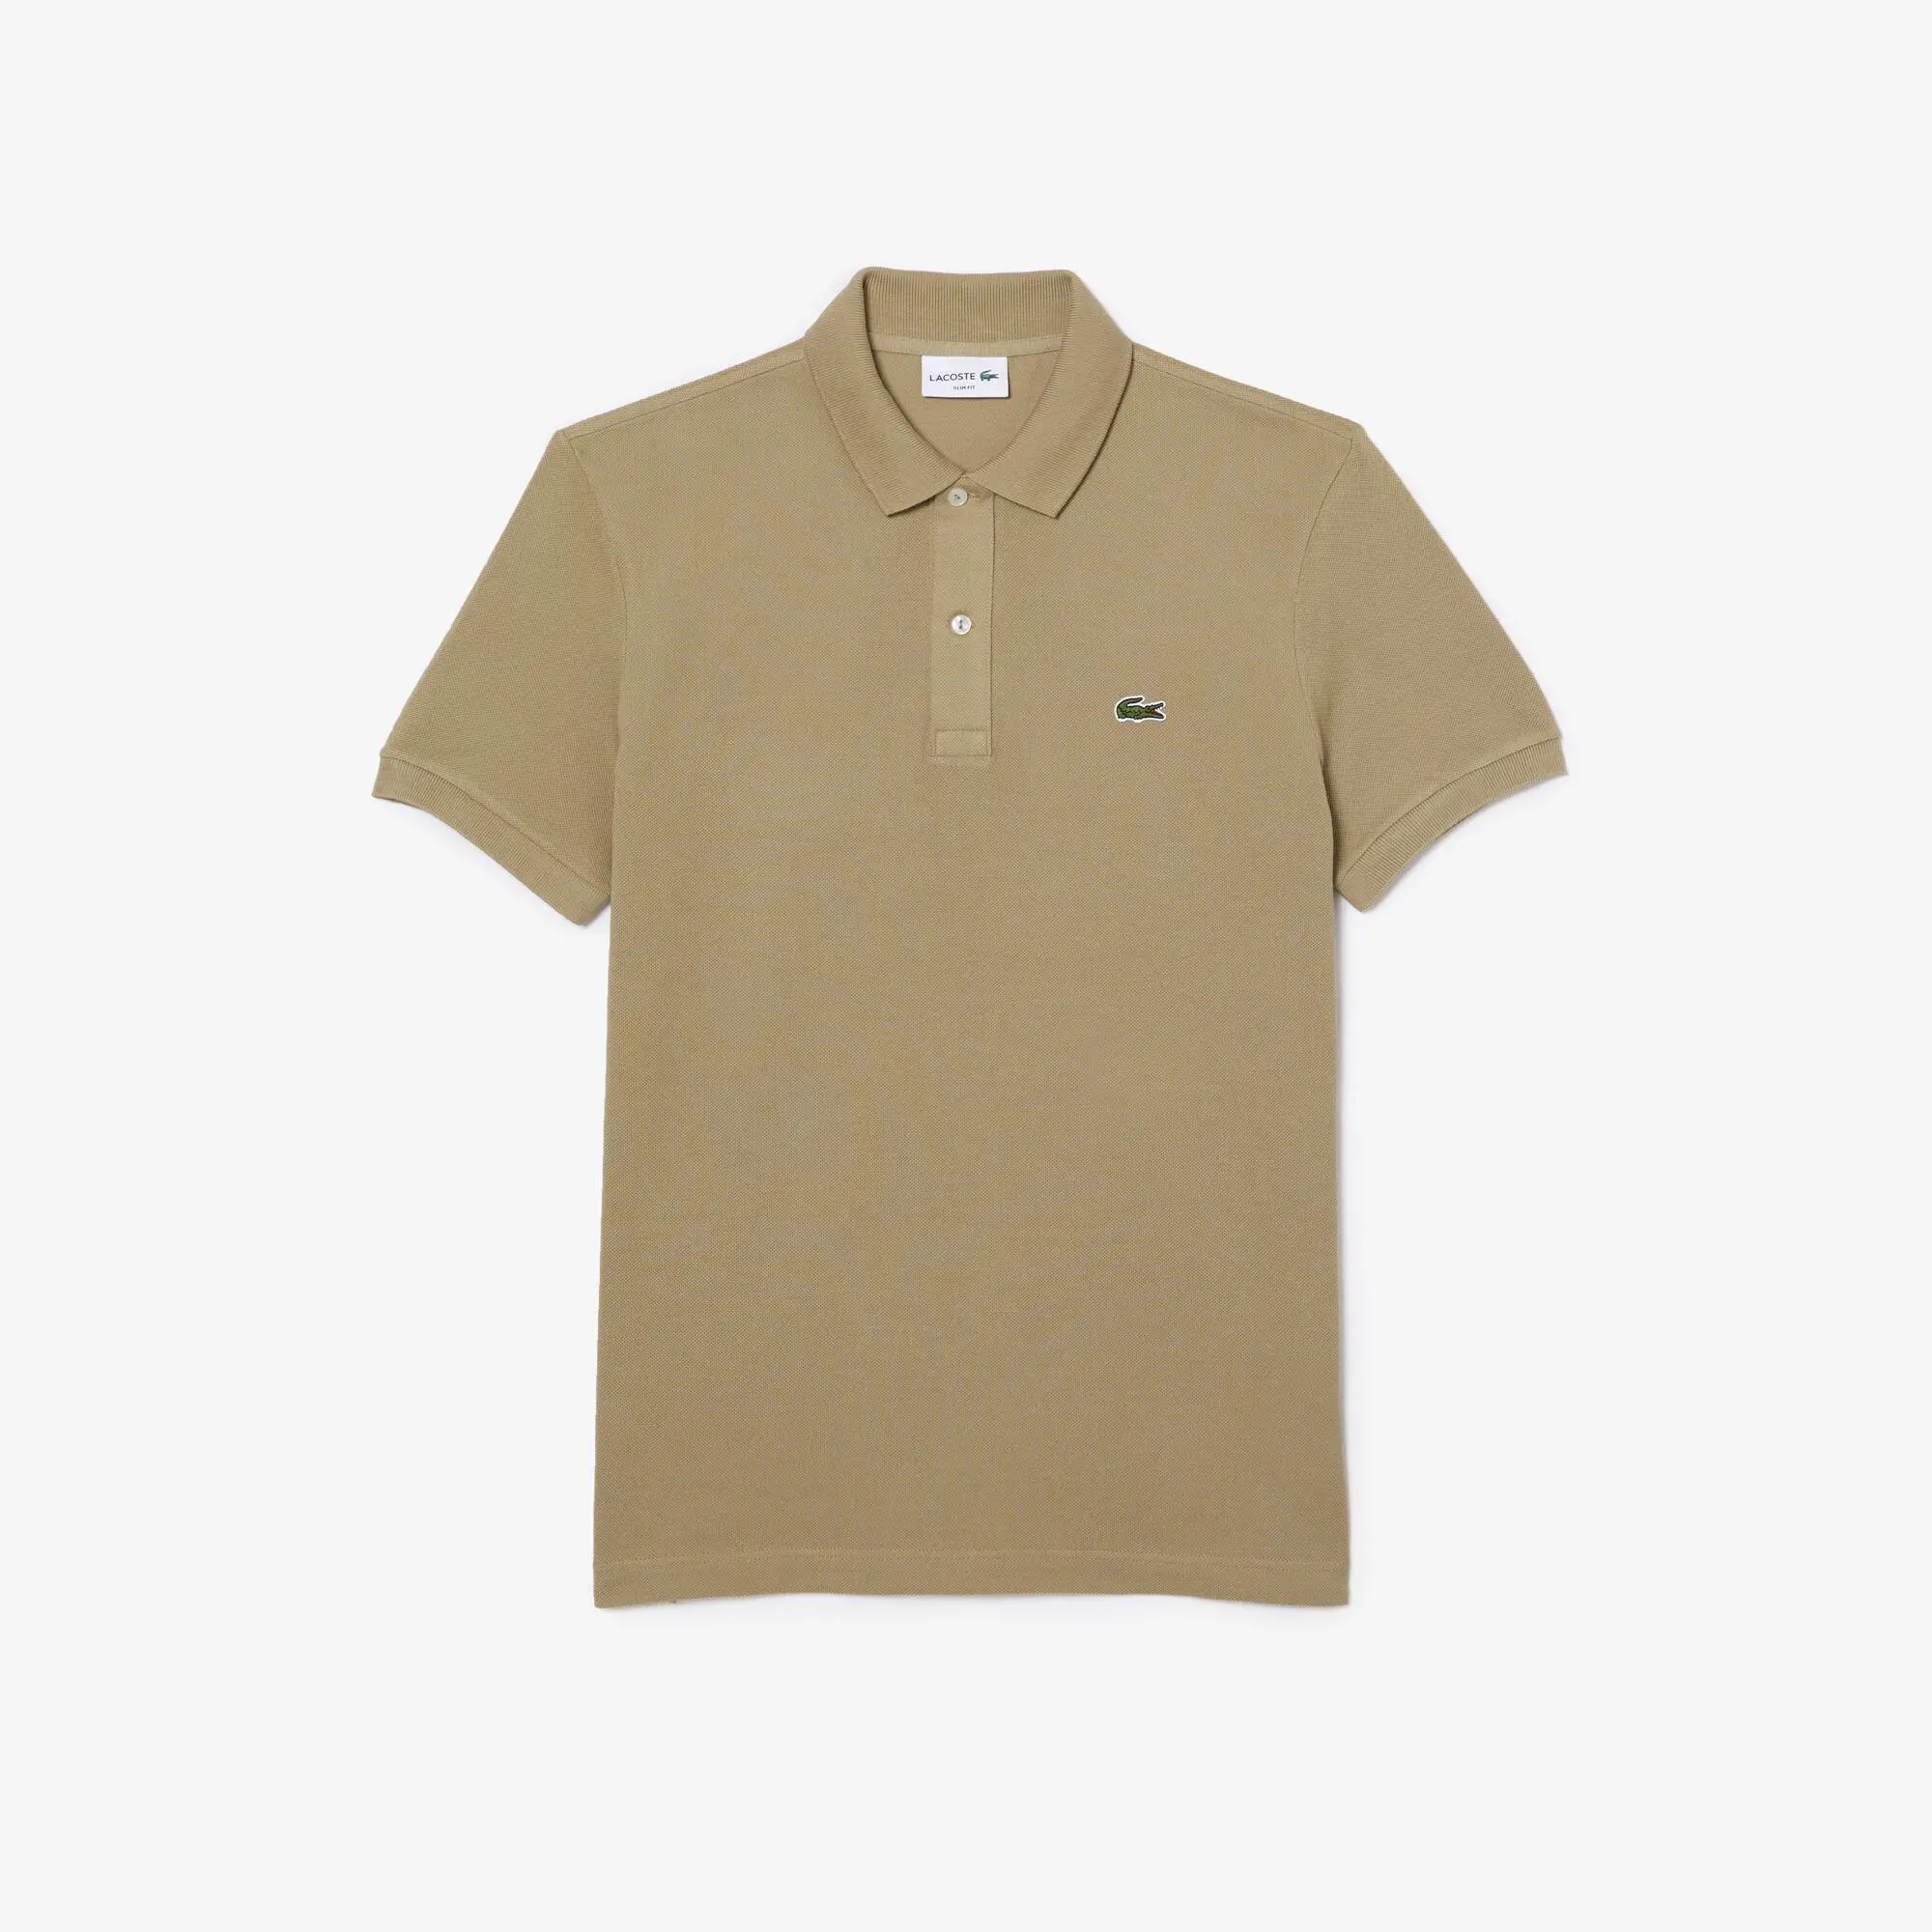 Lacoste Original L.12.12 Slim Fit Petit Piqué Cotton Polo Shirt. 2